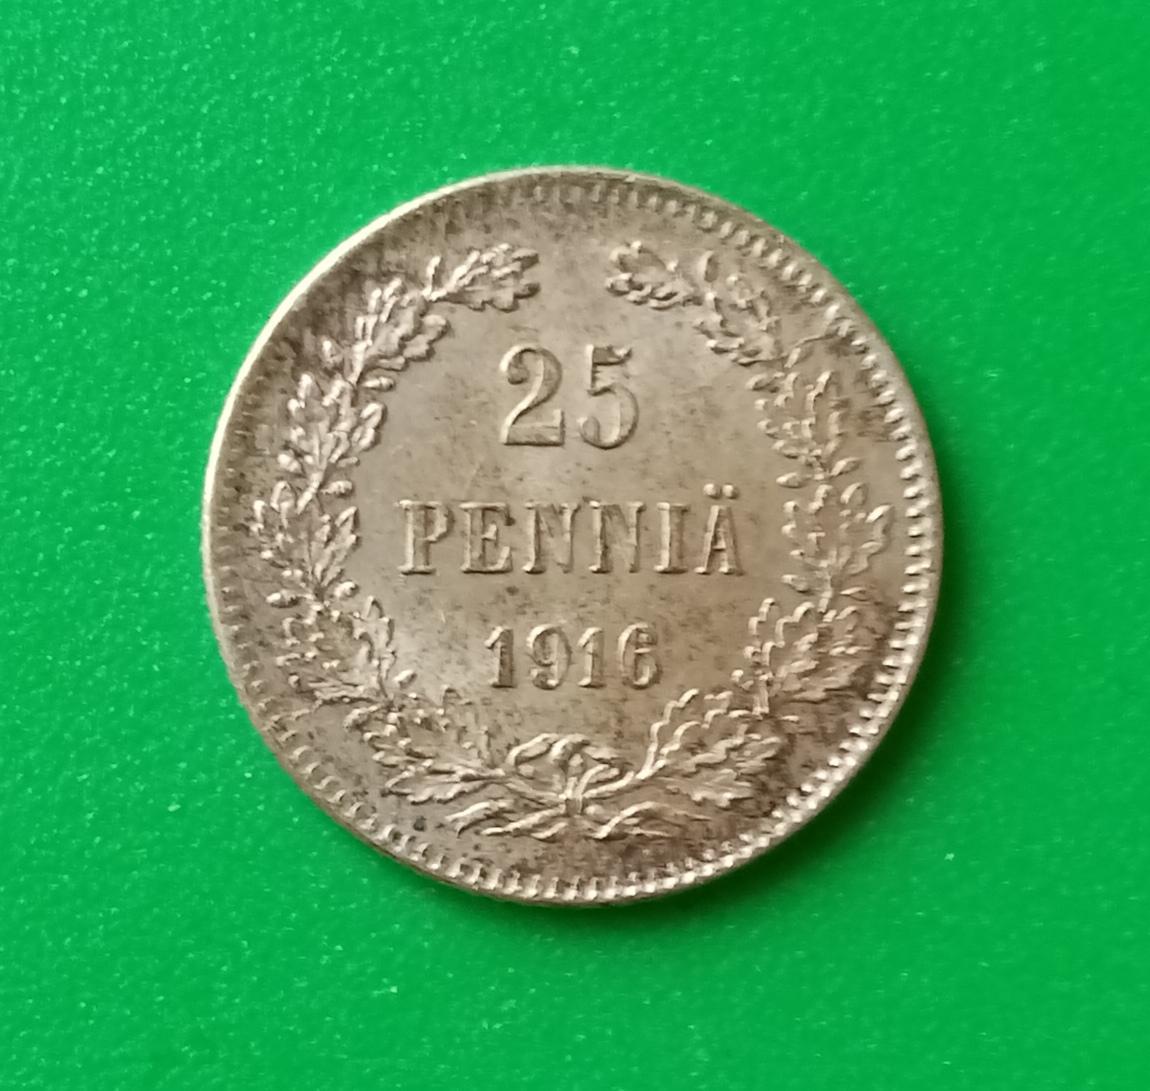 25 пенни - 1916 S.